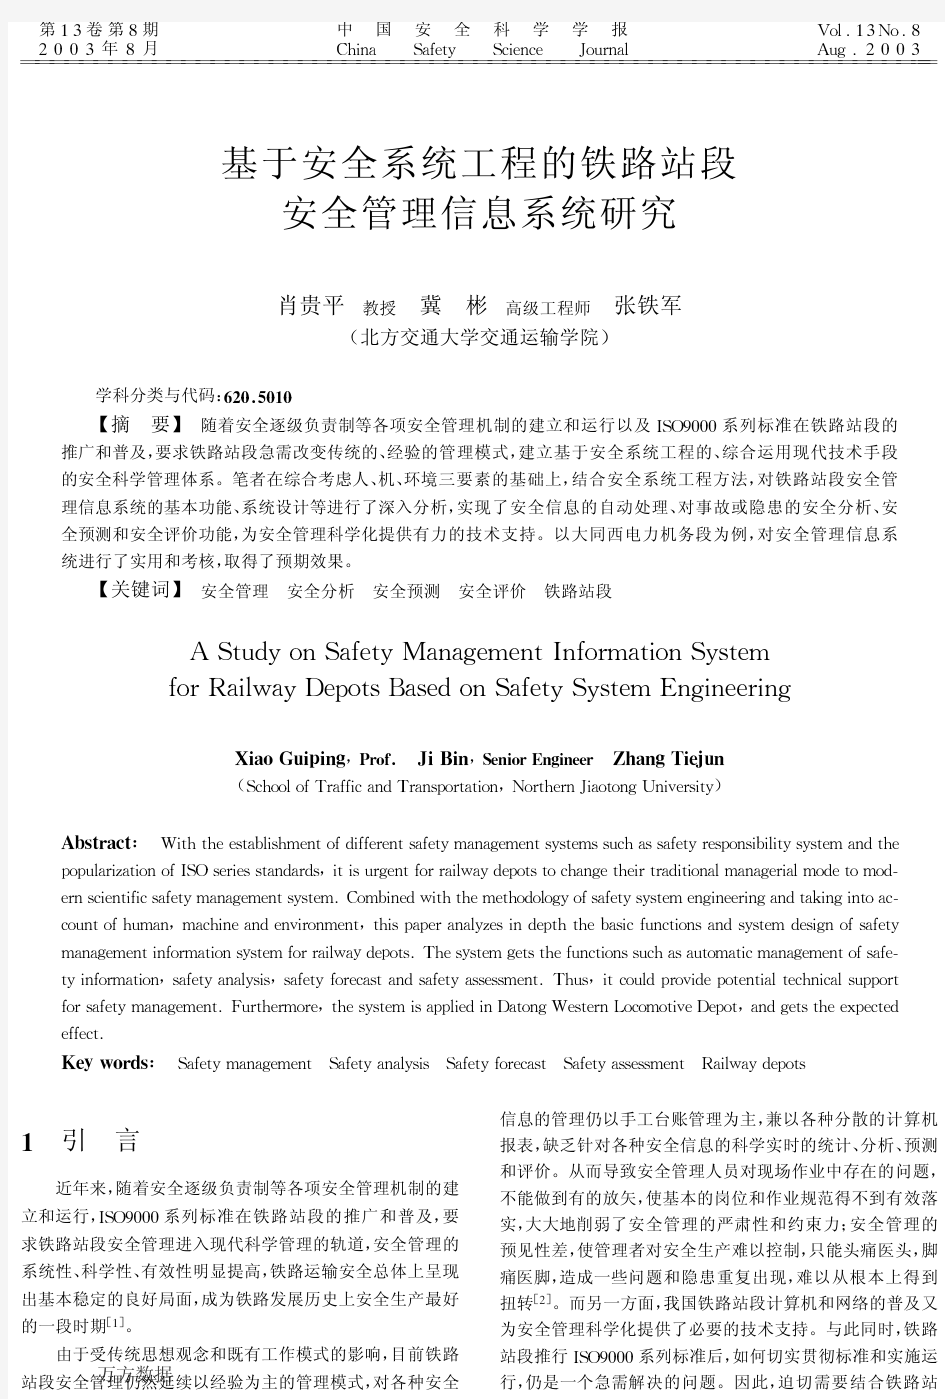 基于安全系统工程的铁路站段安全管理信息系统研究